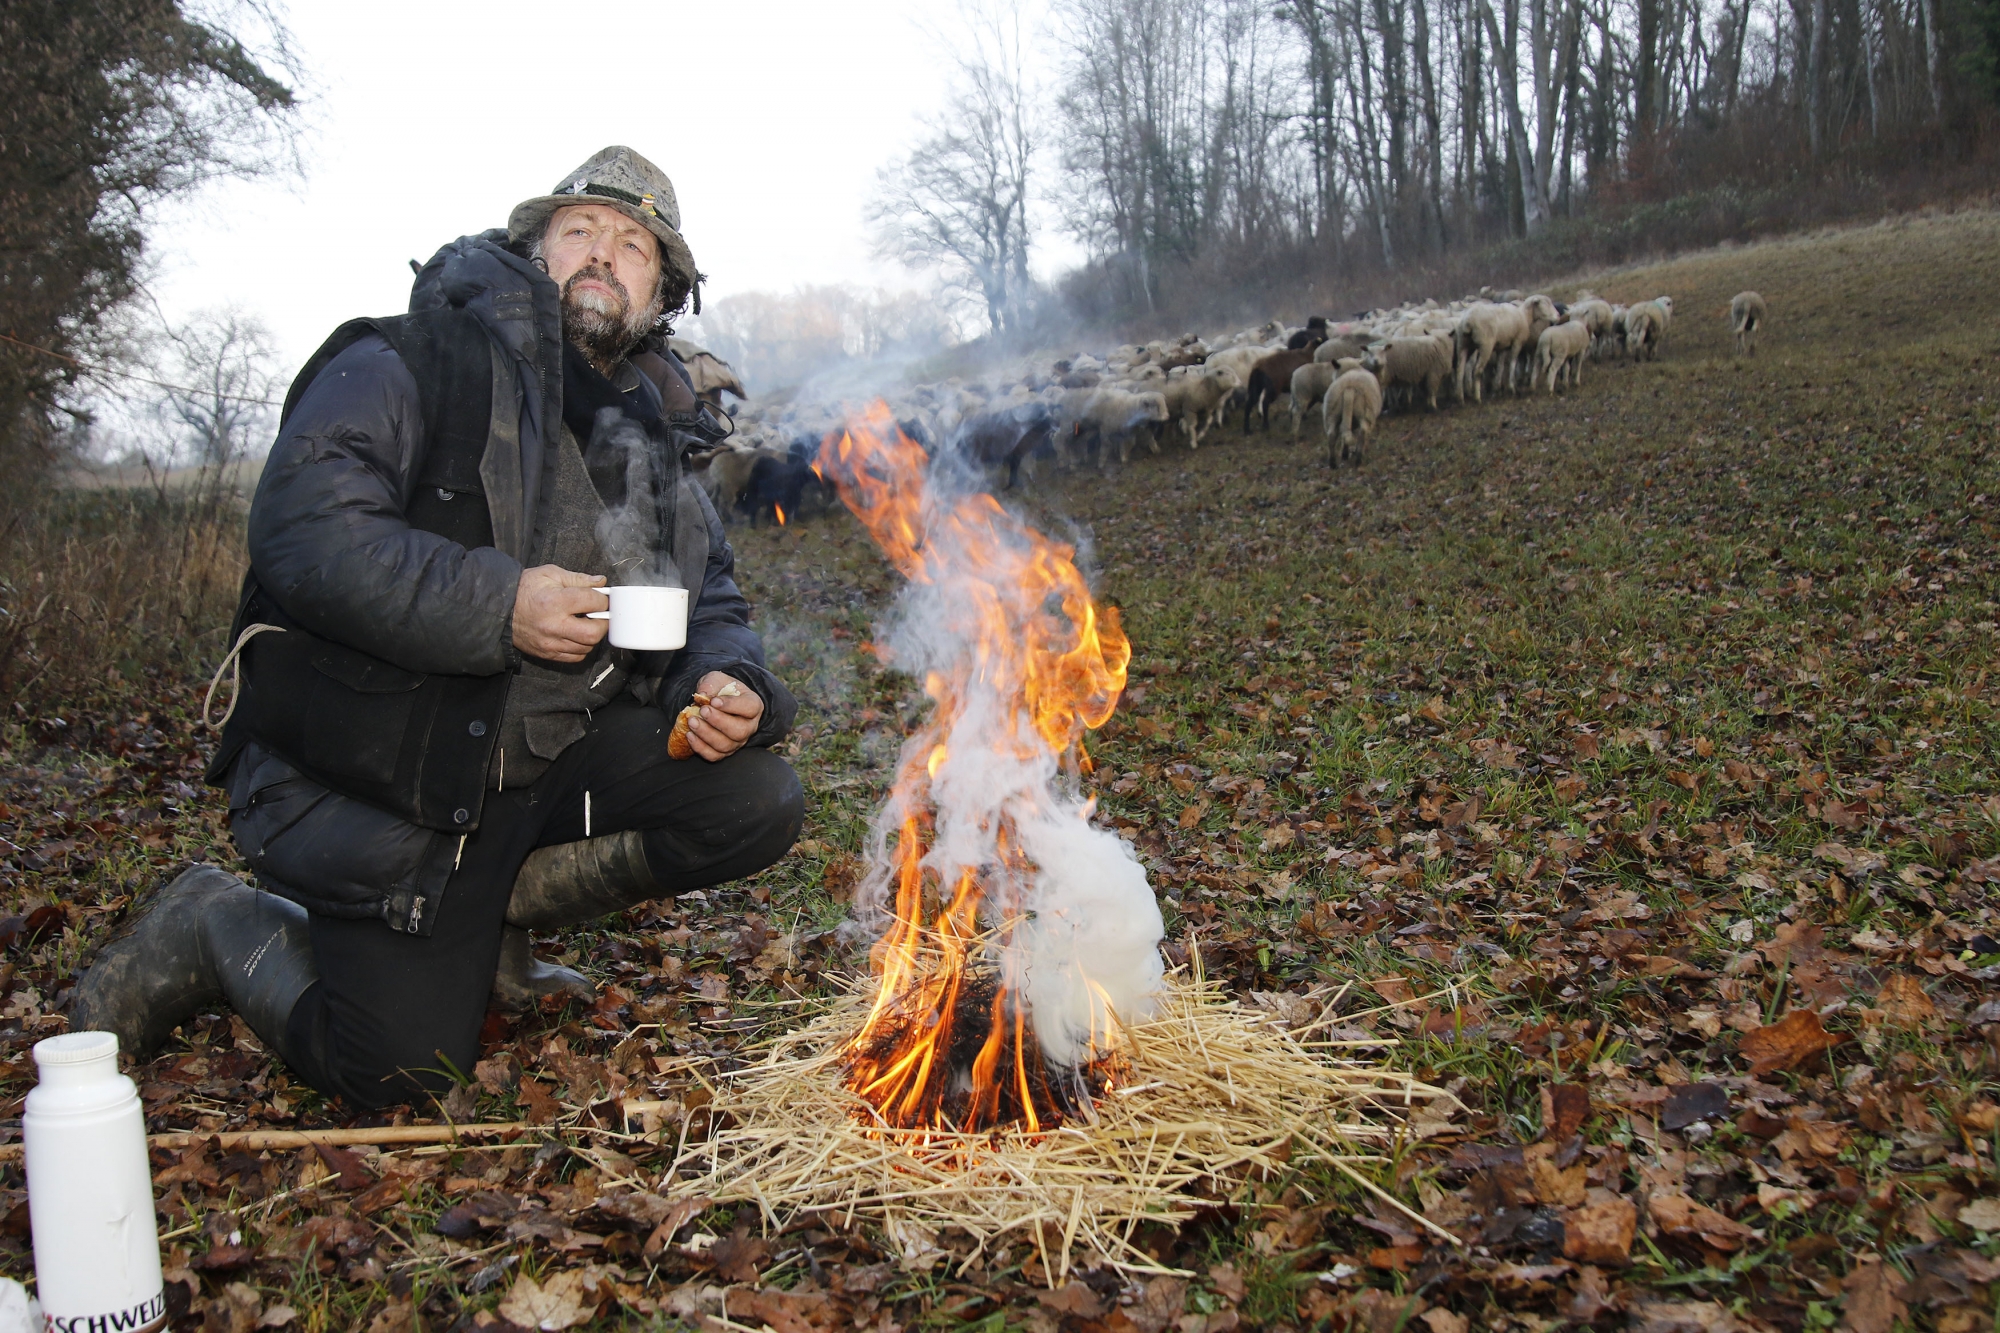 Avant d'entamer une longue marche avec ses bêtes, le berger Nicola Toscano profite d'une pause café à la chaleur d'un feu. Le Grison avait dormi dans sa fourgonnette à deux pas des moutons, à l'abri d'une clairière sous la commune de Bavois. Les agneaux et agnelles sont propriété des frères Benzoni à Aubonne.